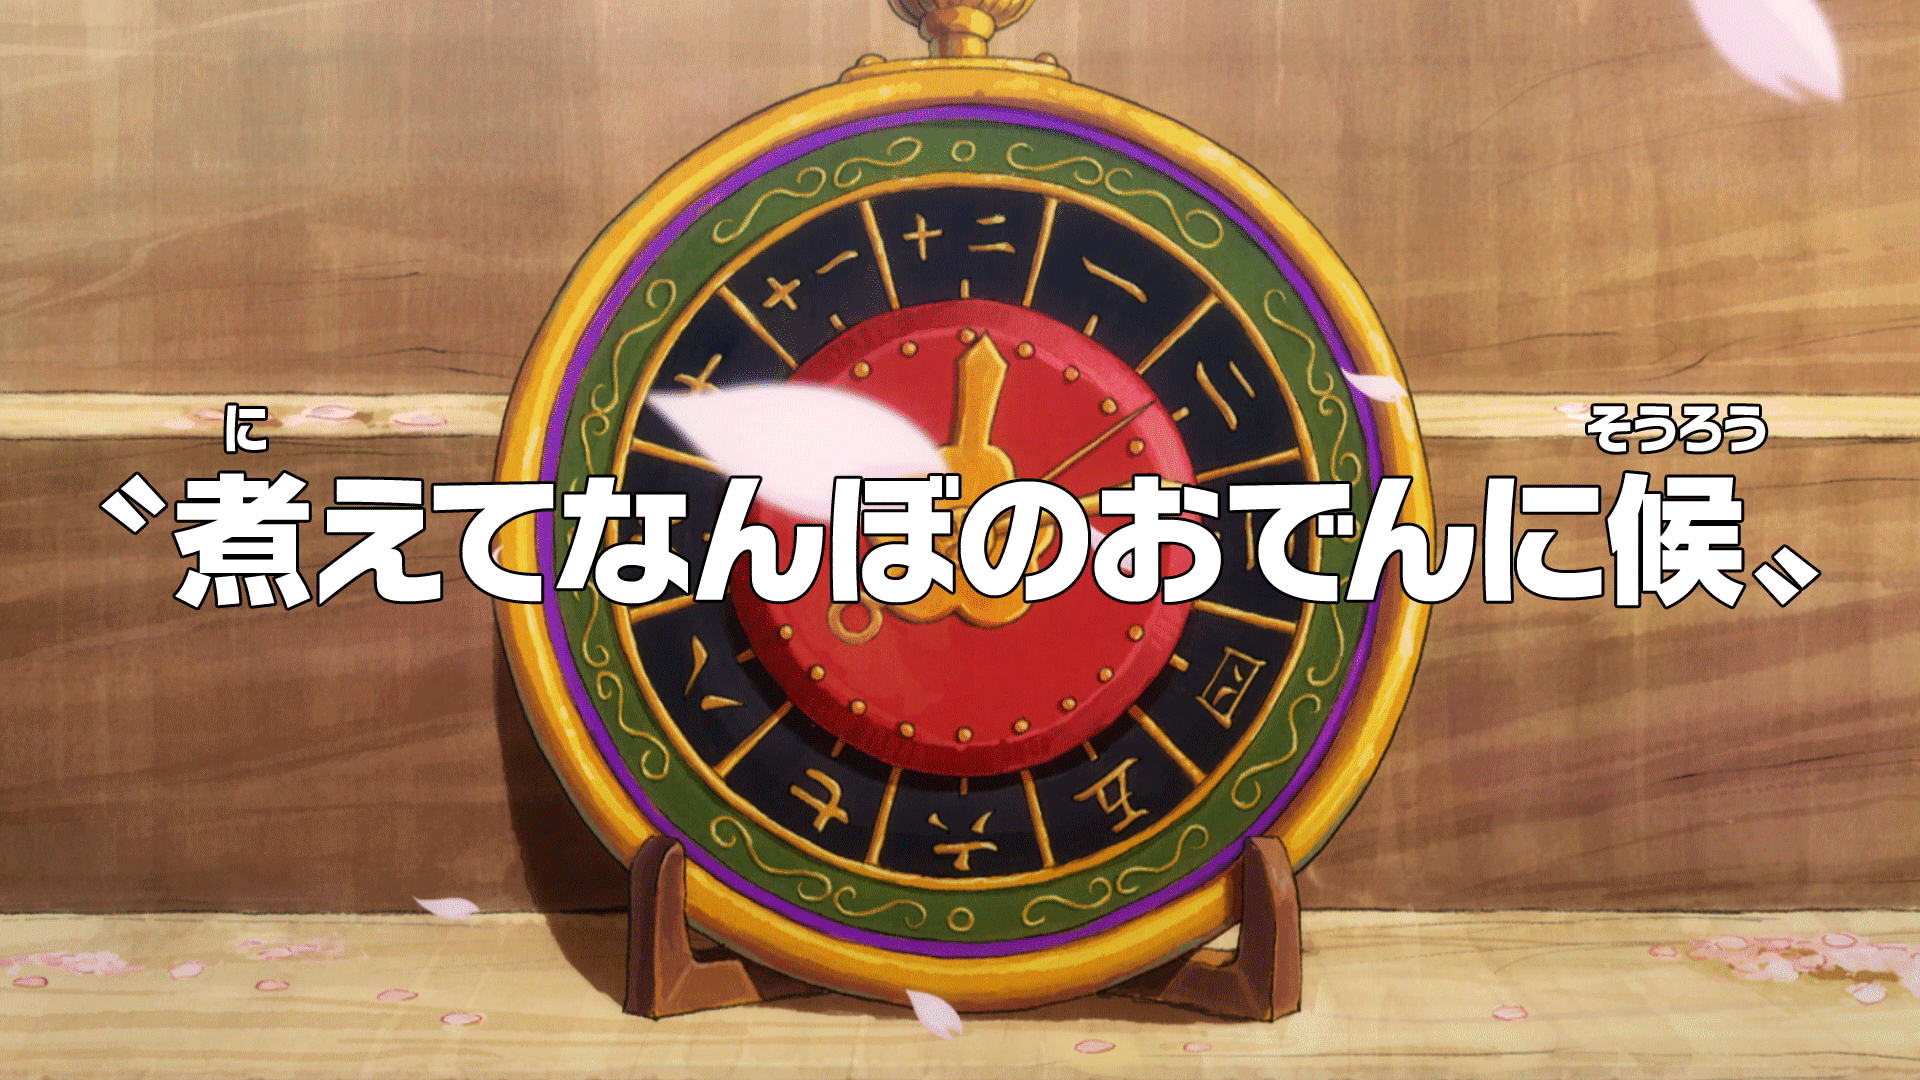 Episode 974 One Piece Wiki Fandom